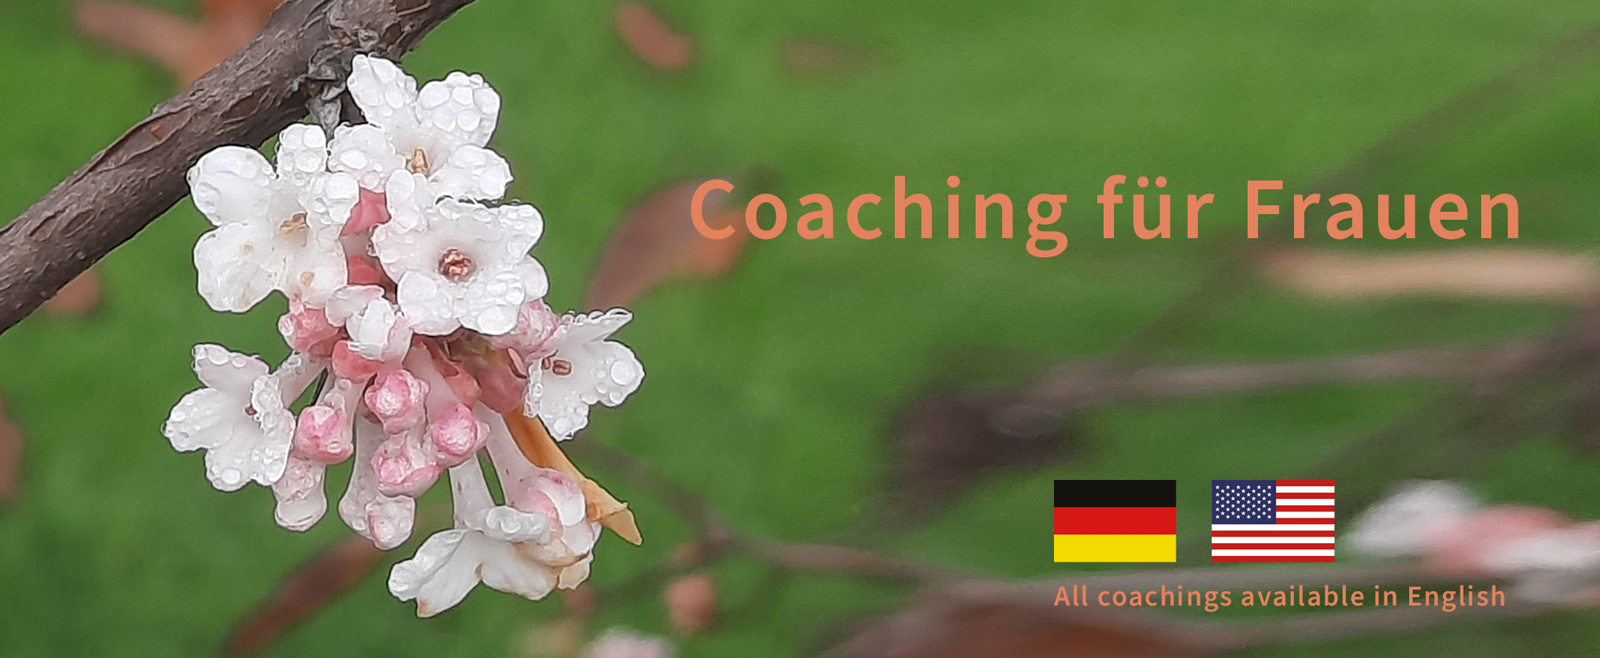 Coaching_fuer_frauen